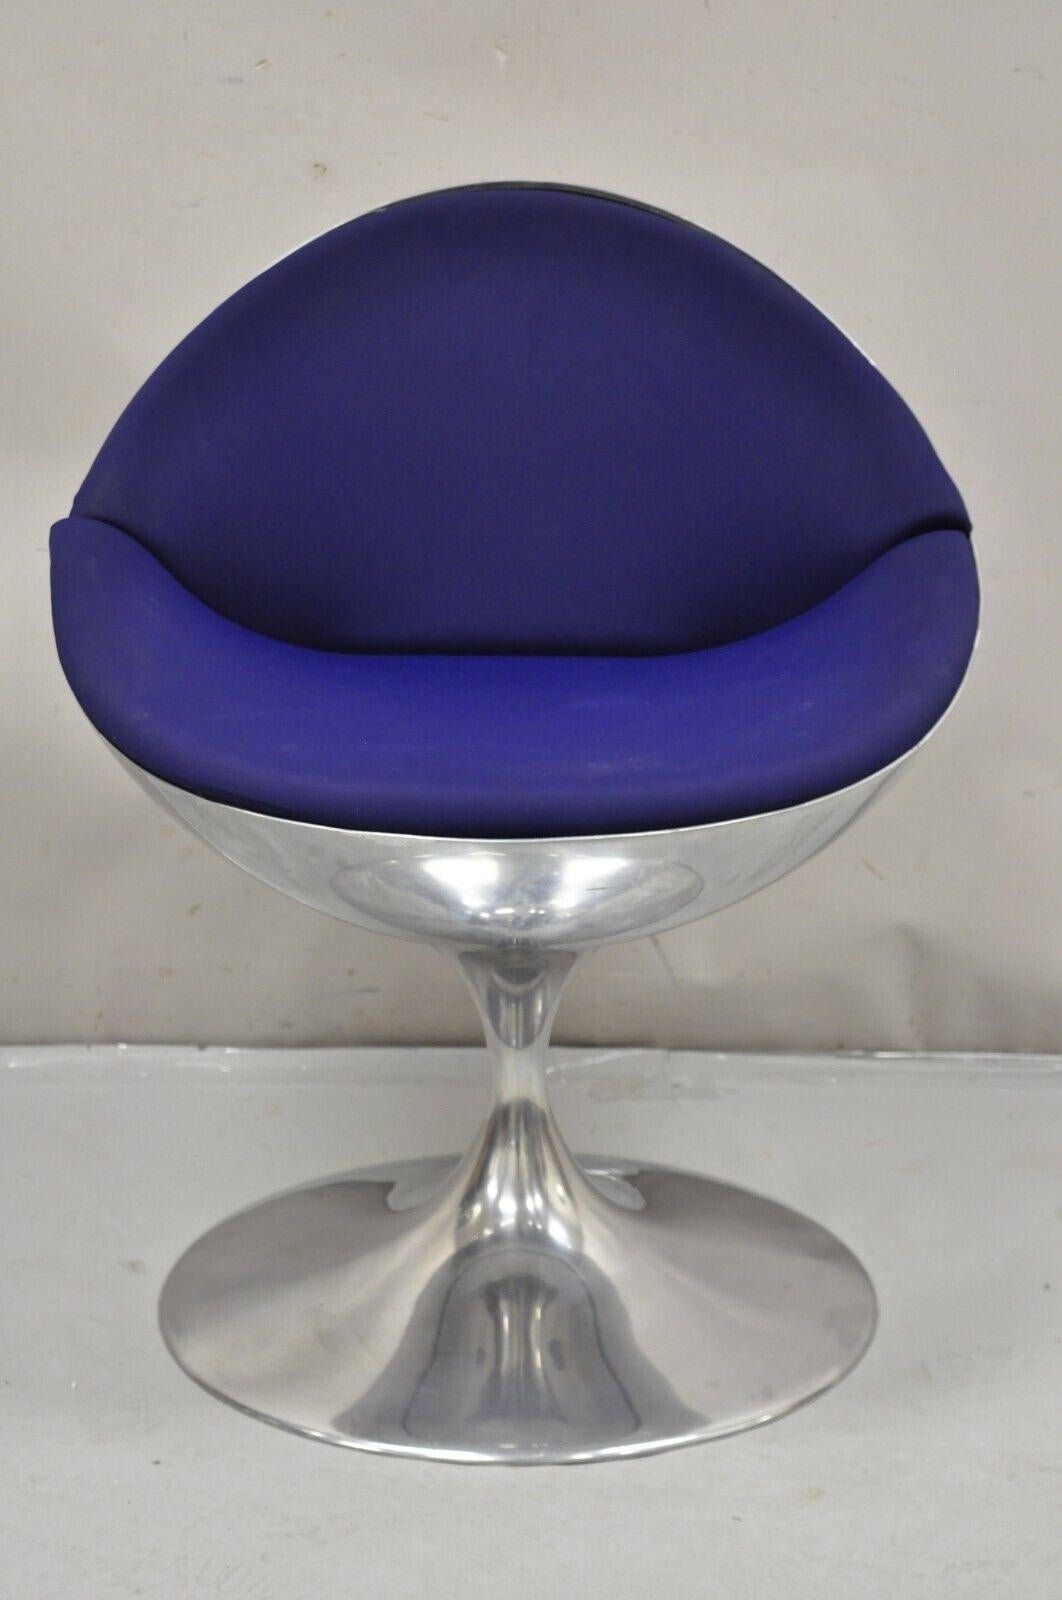 Prospettive Luna Swivel Style Saarinen Aluminum Blue Mid Century Style Dining Club Chair Designed by Paolo Chiantini. L'article est doté d'une structure en métal lourd, d'un siège pivotant, d'un piédestal tulipe, d'un cachet original et d'un tissu